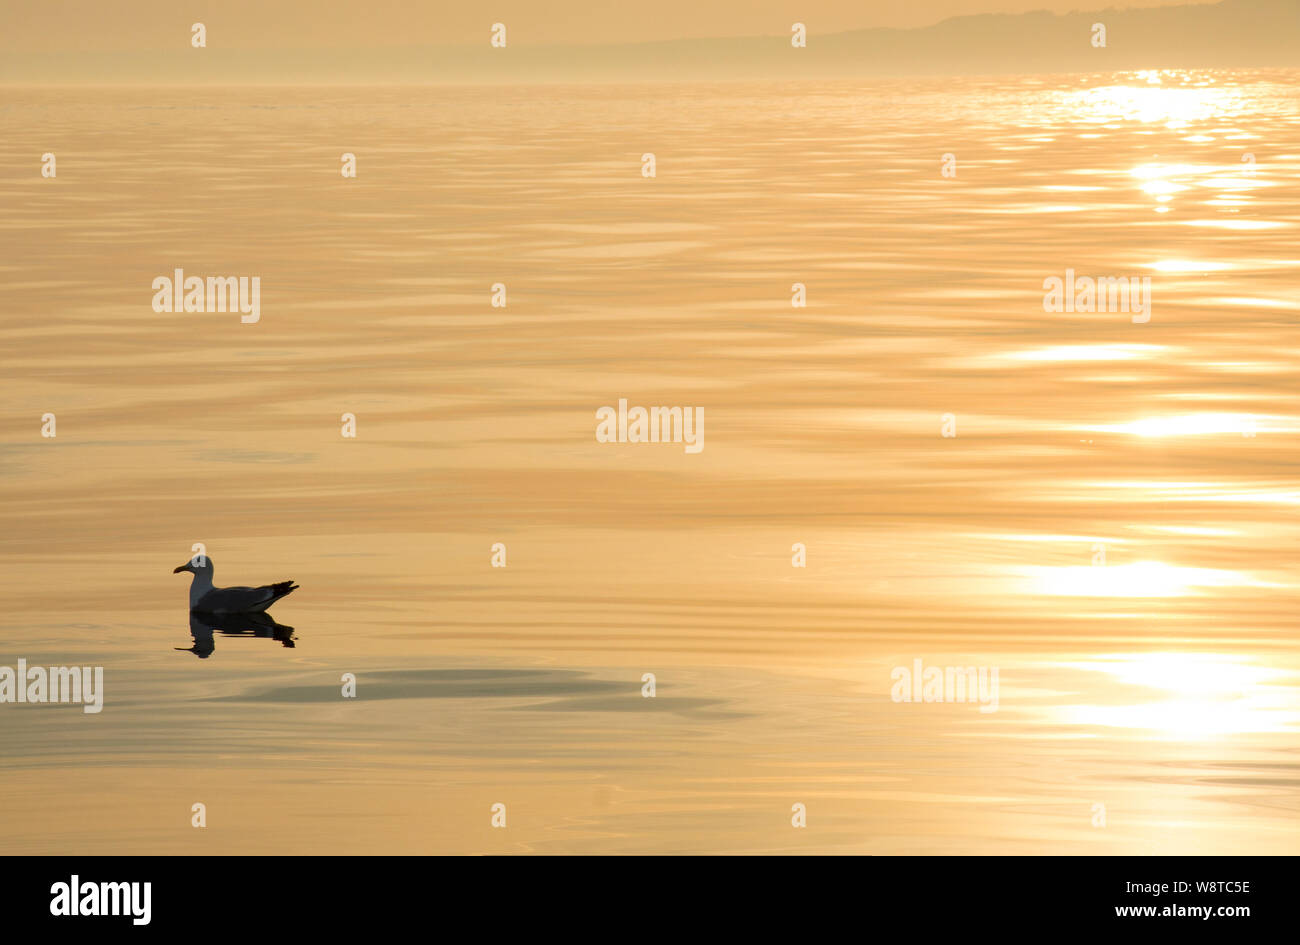 Un solitaire goéland argenté (Larus argentatus, au coucher du soleil sur une mer calme dans la baie de Lyme vu depuis un bateau. Dorset England UK GB. Banque D'Images